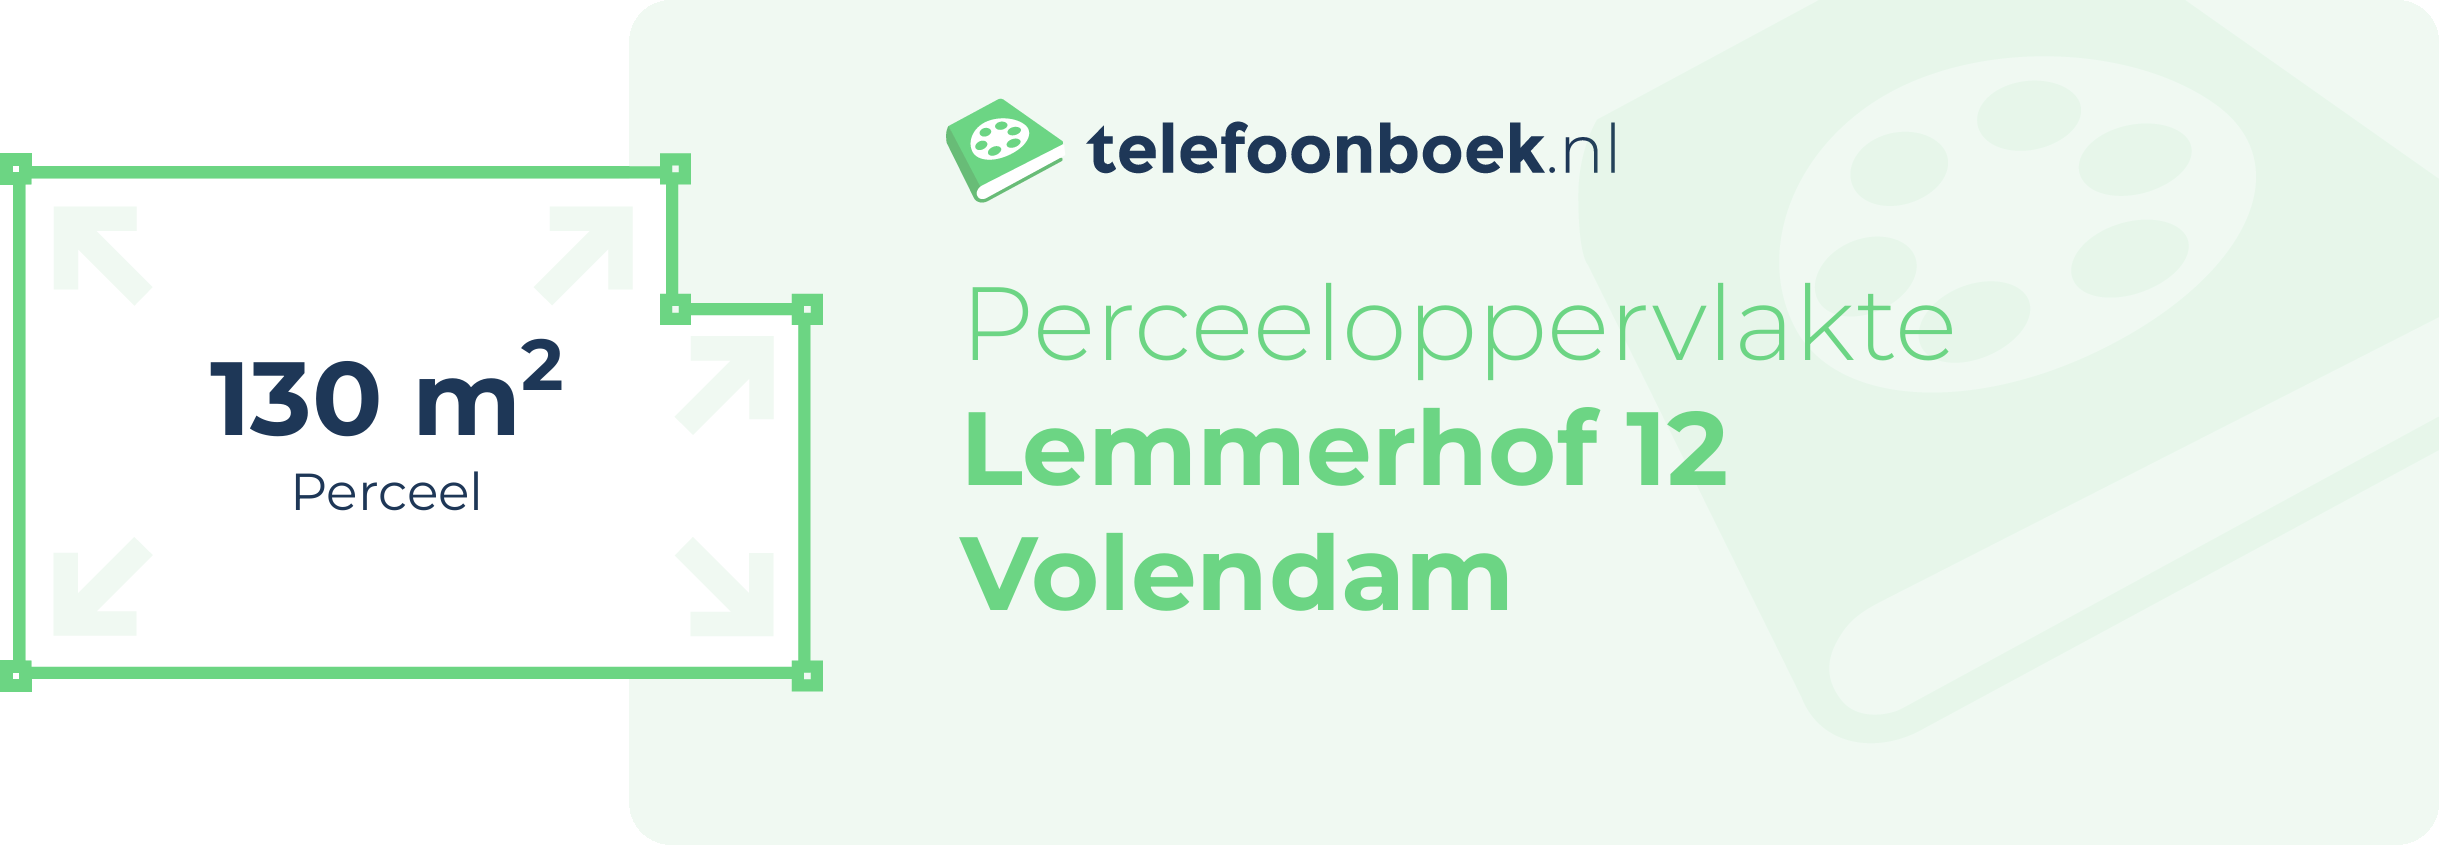 Perceeloppervlakte Lemmerhof 12 Volendam